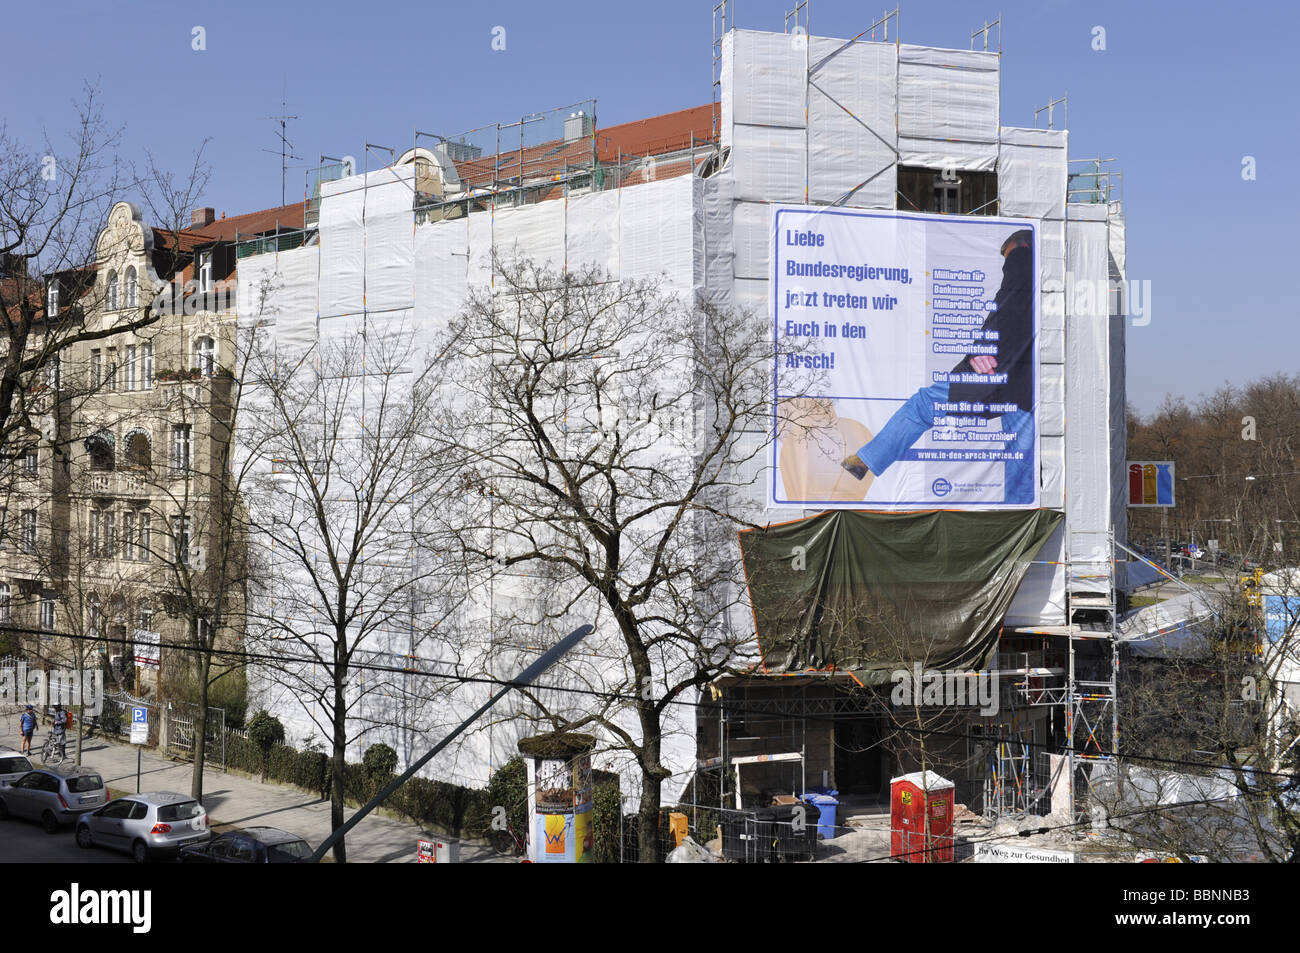 Geographie/Reisen, Deutschland, München, Werbung Plakat an Fassade, Nymphenburger Straße 189, Additional-Rights - Clearance-Info - Not-Available Stockfoto